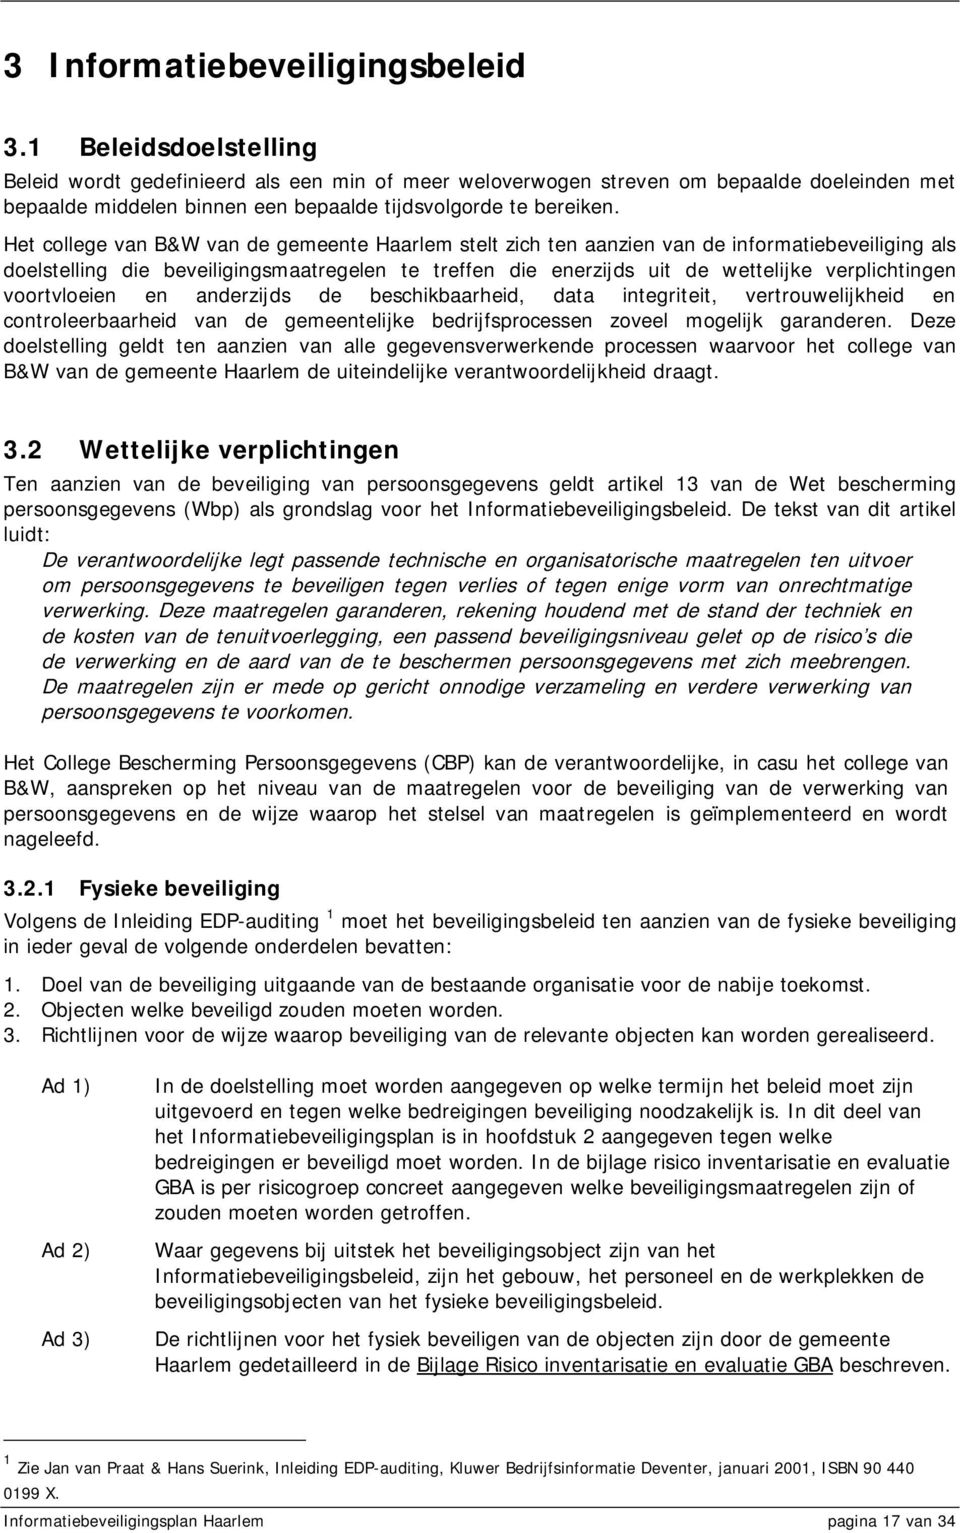 Het college van B&W van de gemeente Haarlem stelt zich ten aanzien van de informatiebeveiliging als doelstelling die beveiligingsmaatregelen te treffen die enerzijds uit de wettelijke verplichtingen